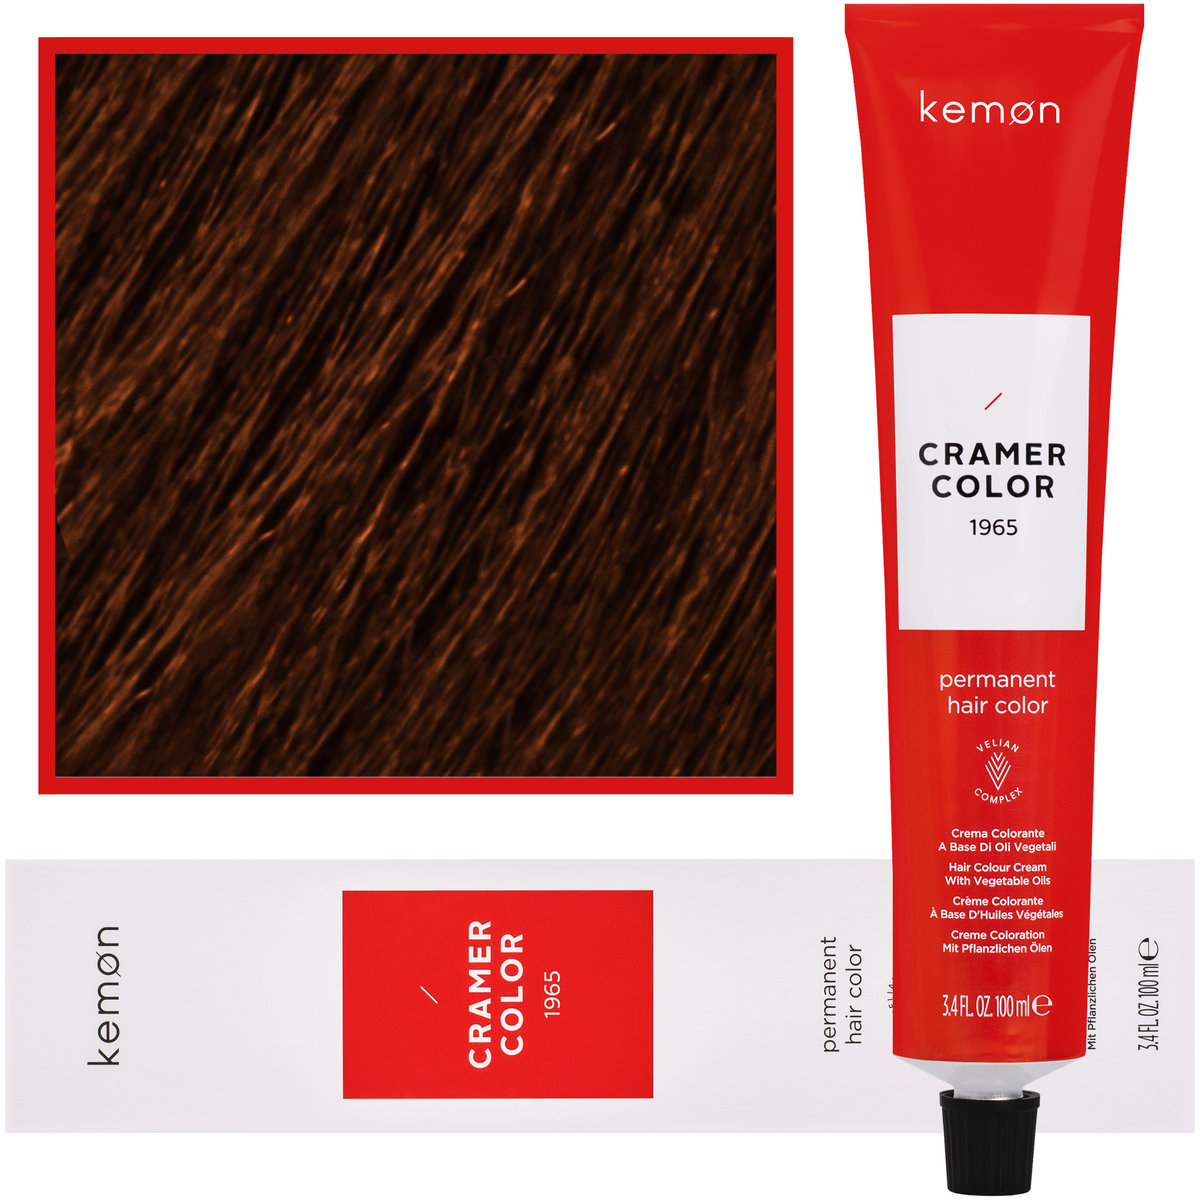 Zdjęcia - Farba do włosów Kemon , Cramer Color 100ml kremowa  z olejkami roślinnymi 7, 